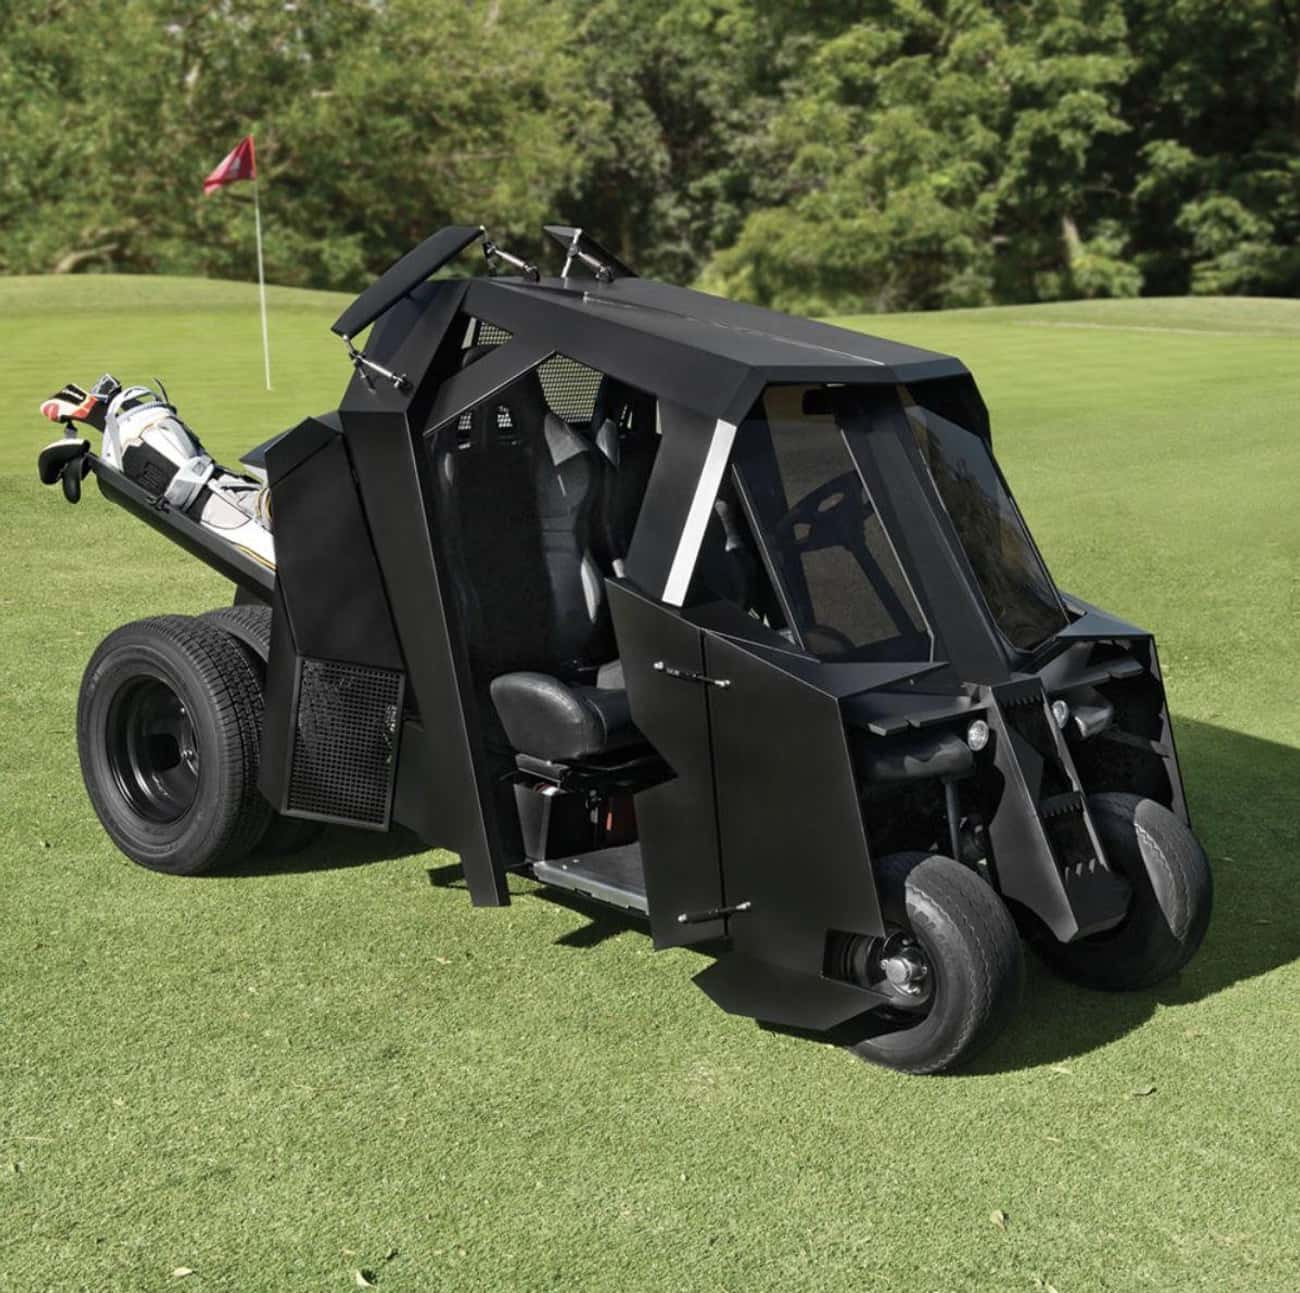 A Batman-Inspired Golf Cart